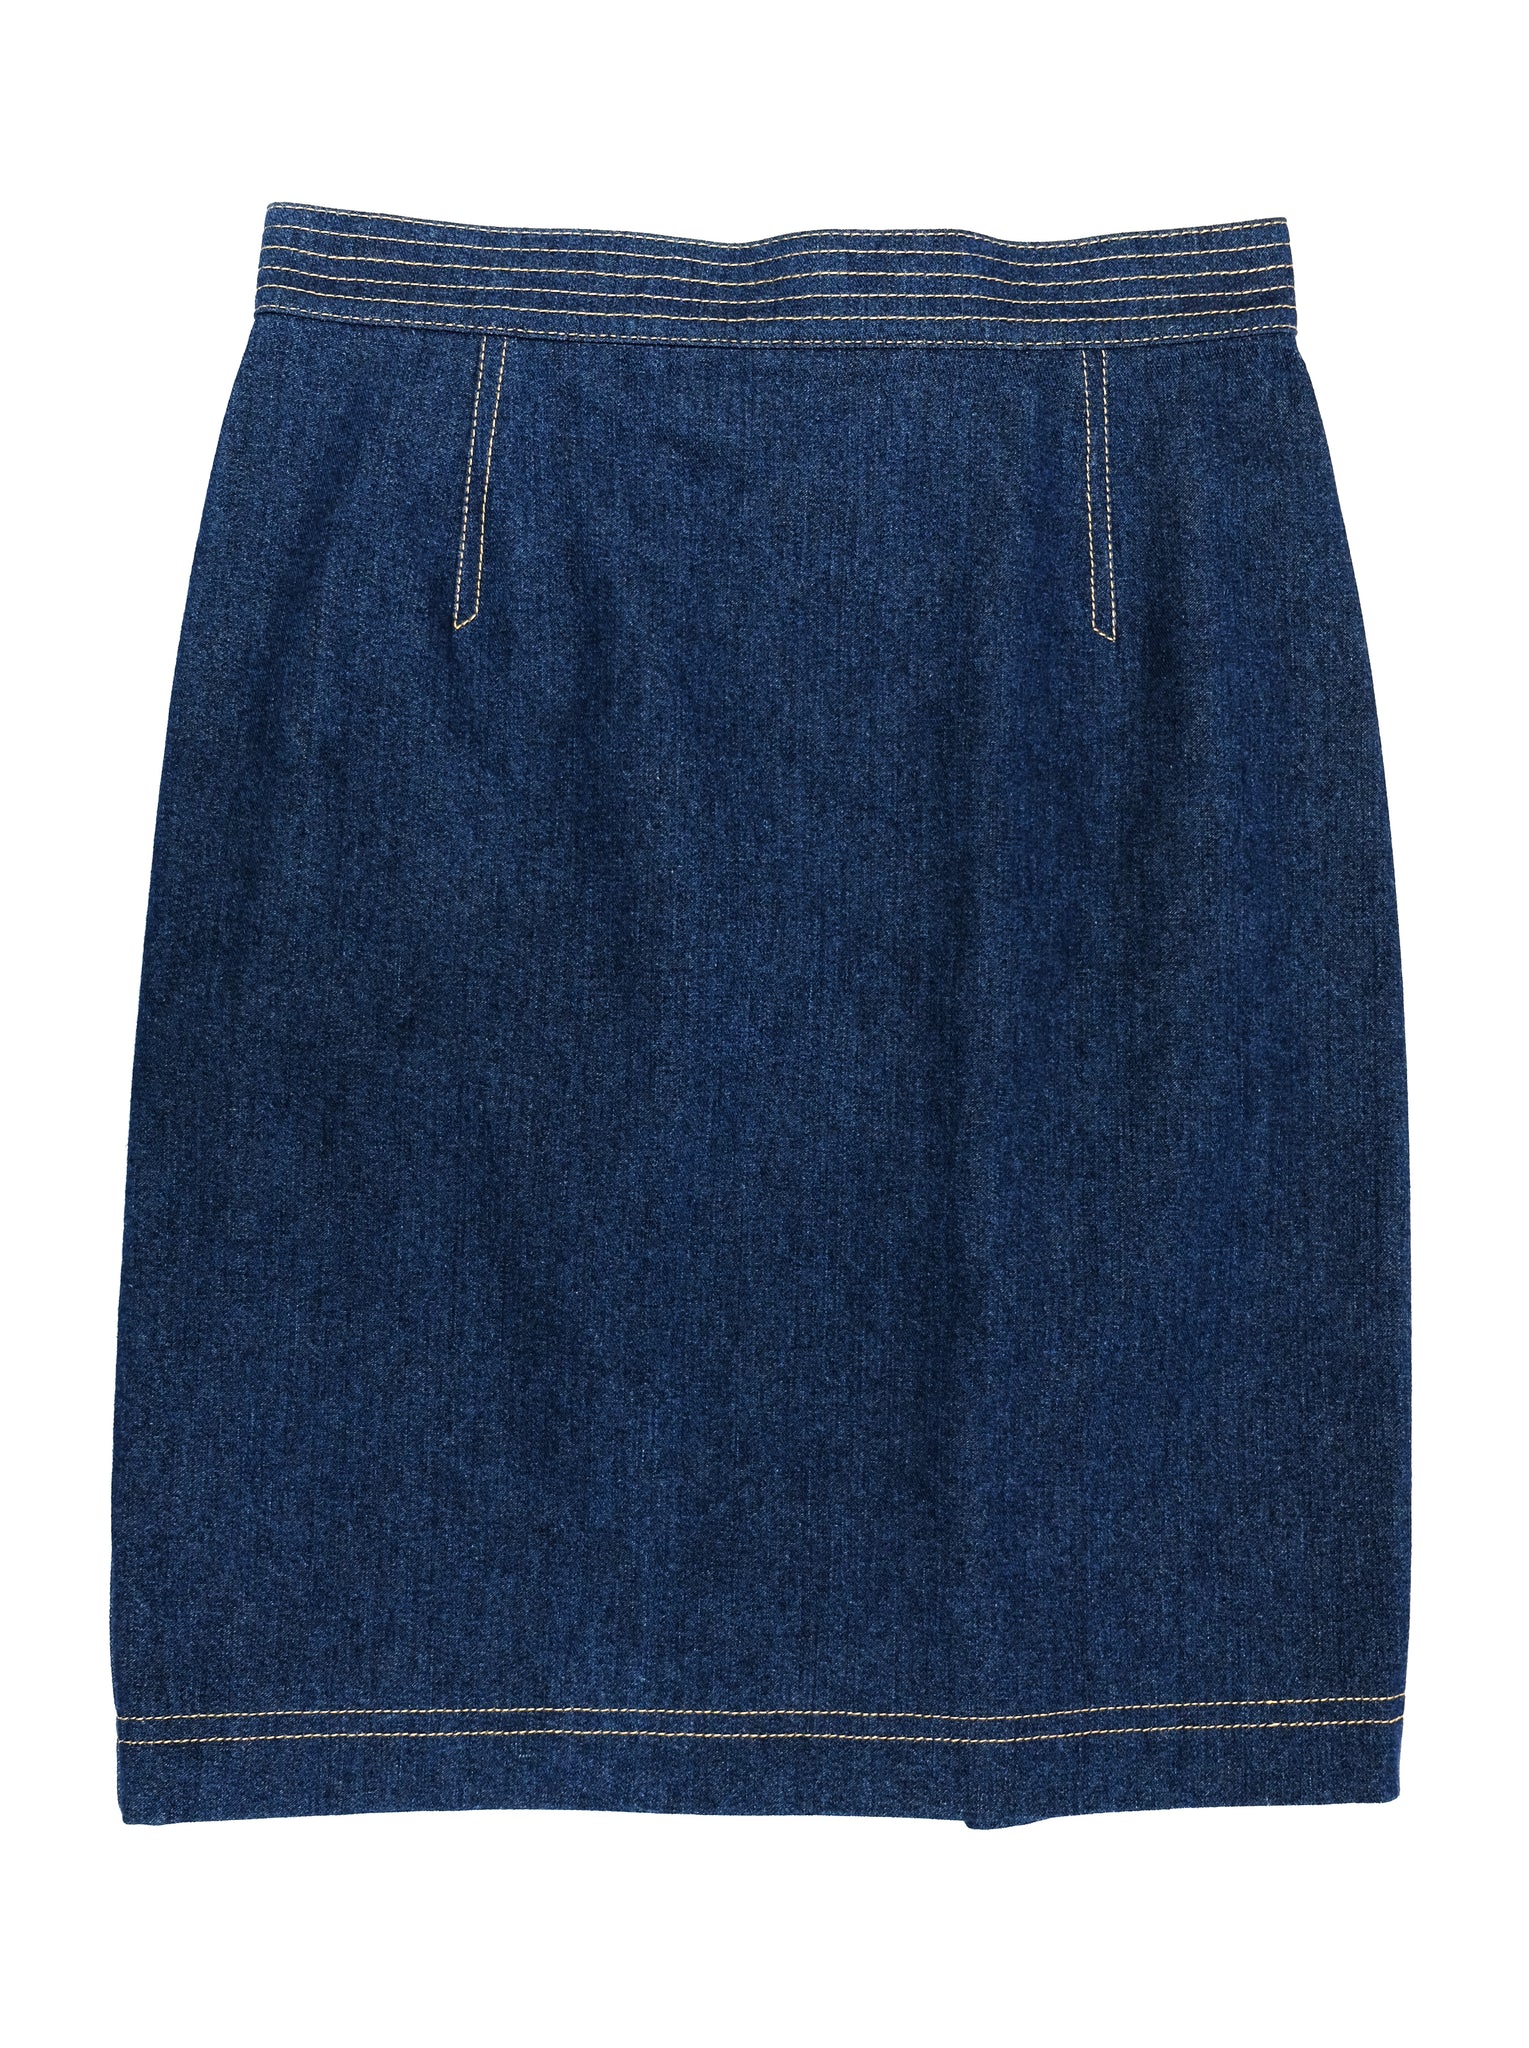 Escada Vintage Denim Skirt Suit, UK10-12 – Menage Modern Vintage